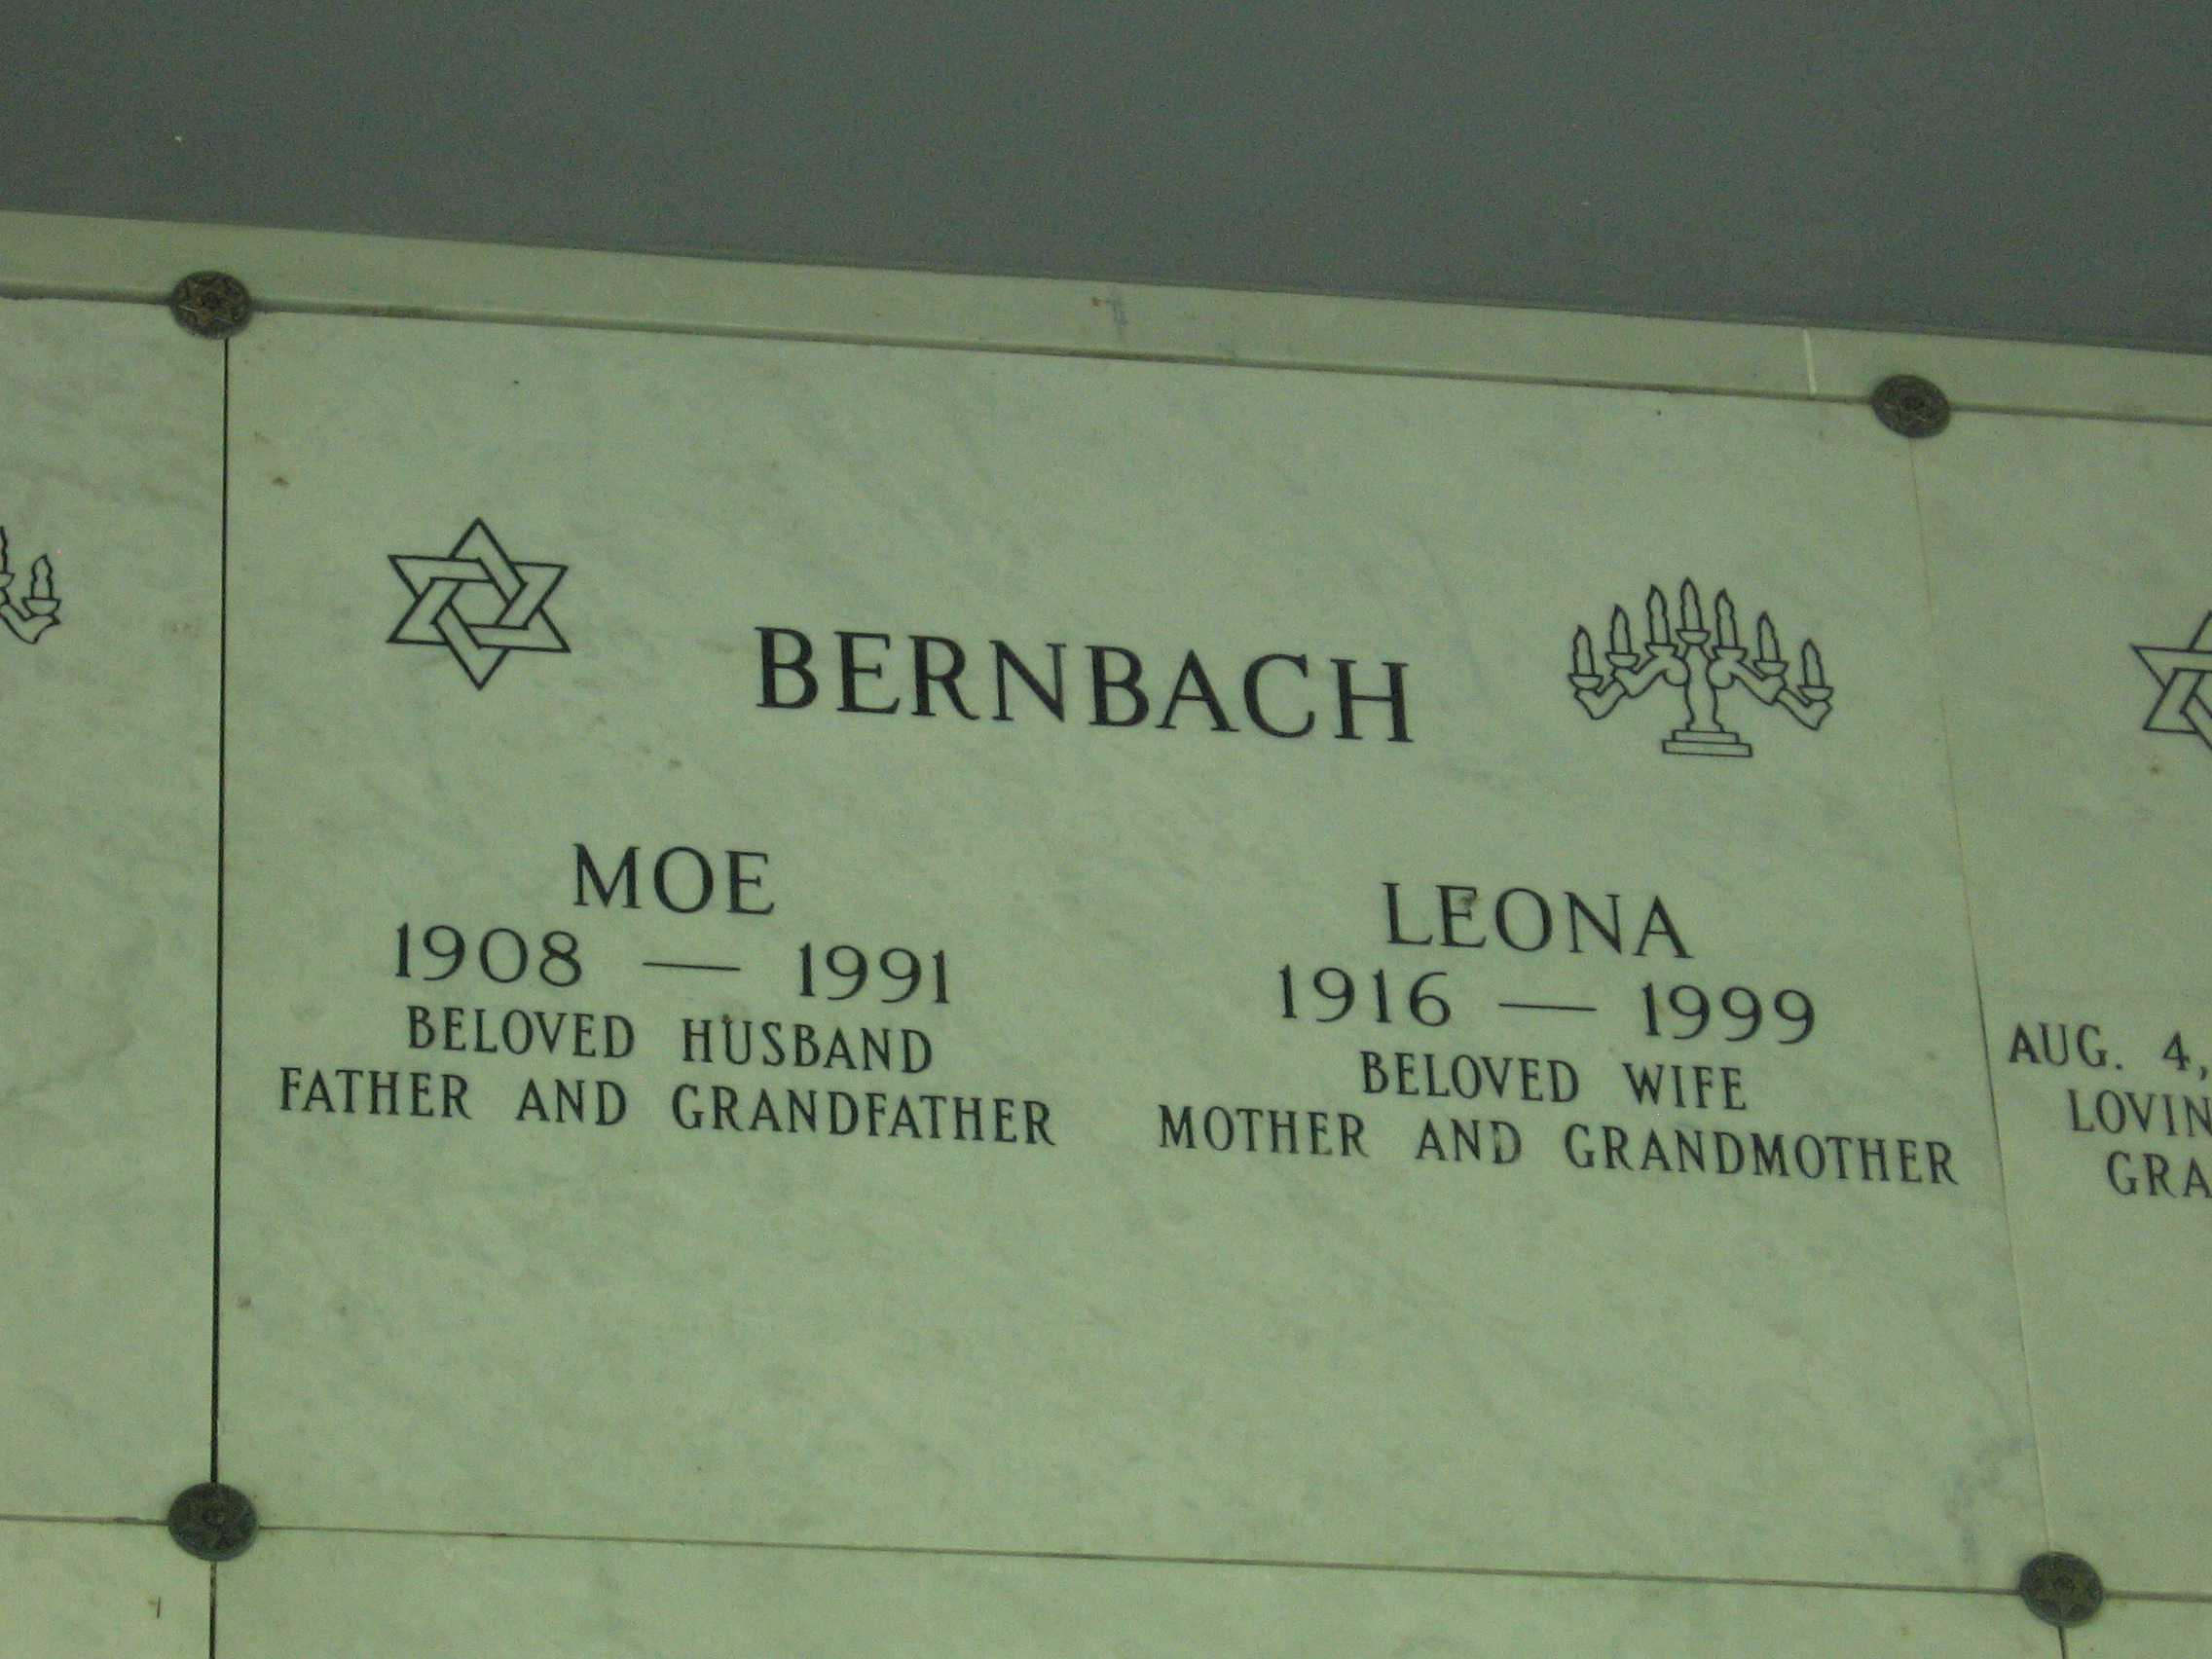 Moe Bernbach